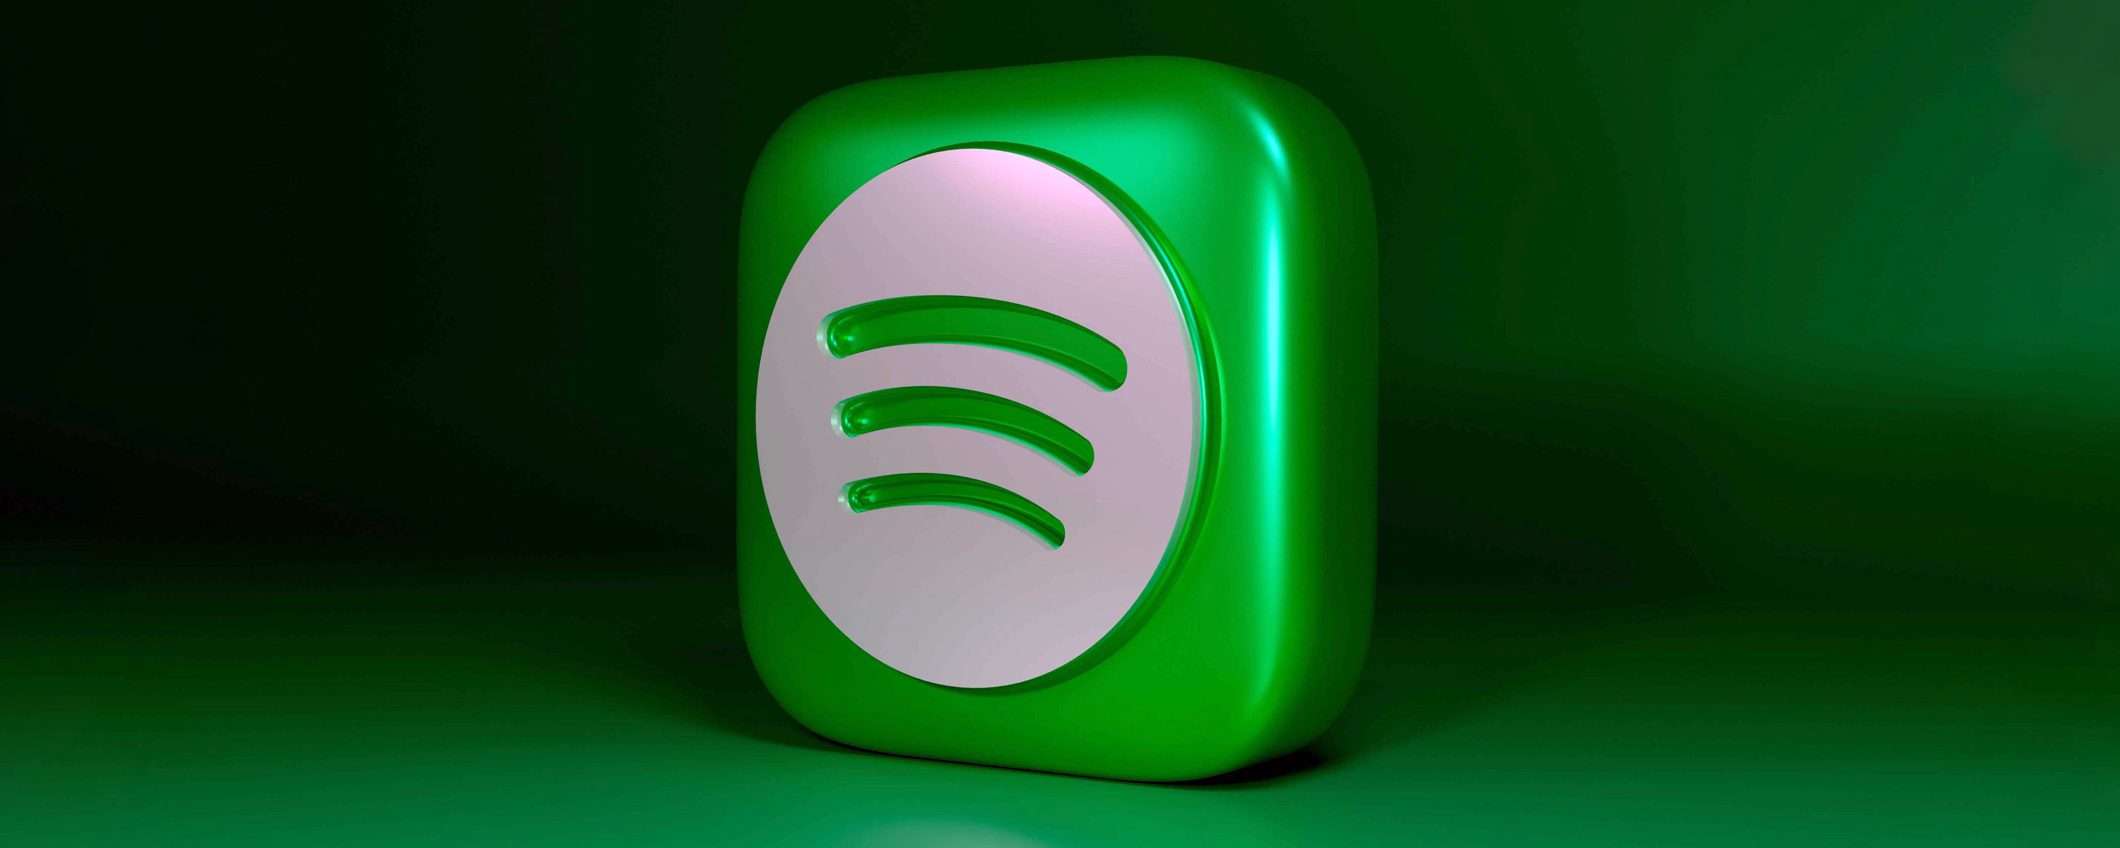 Spotify consente pagamenti di terze parti su Android